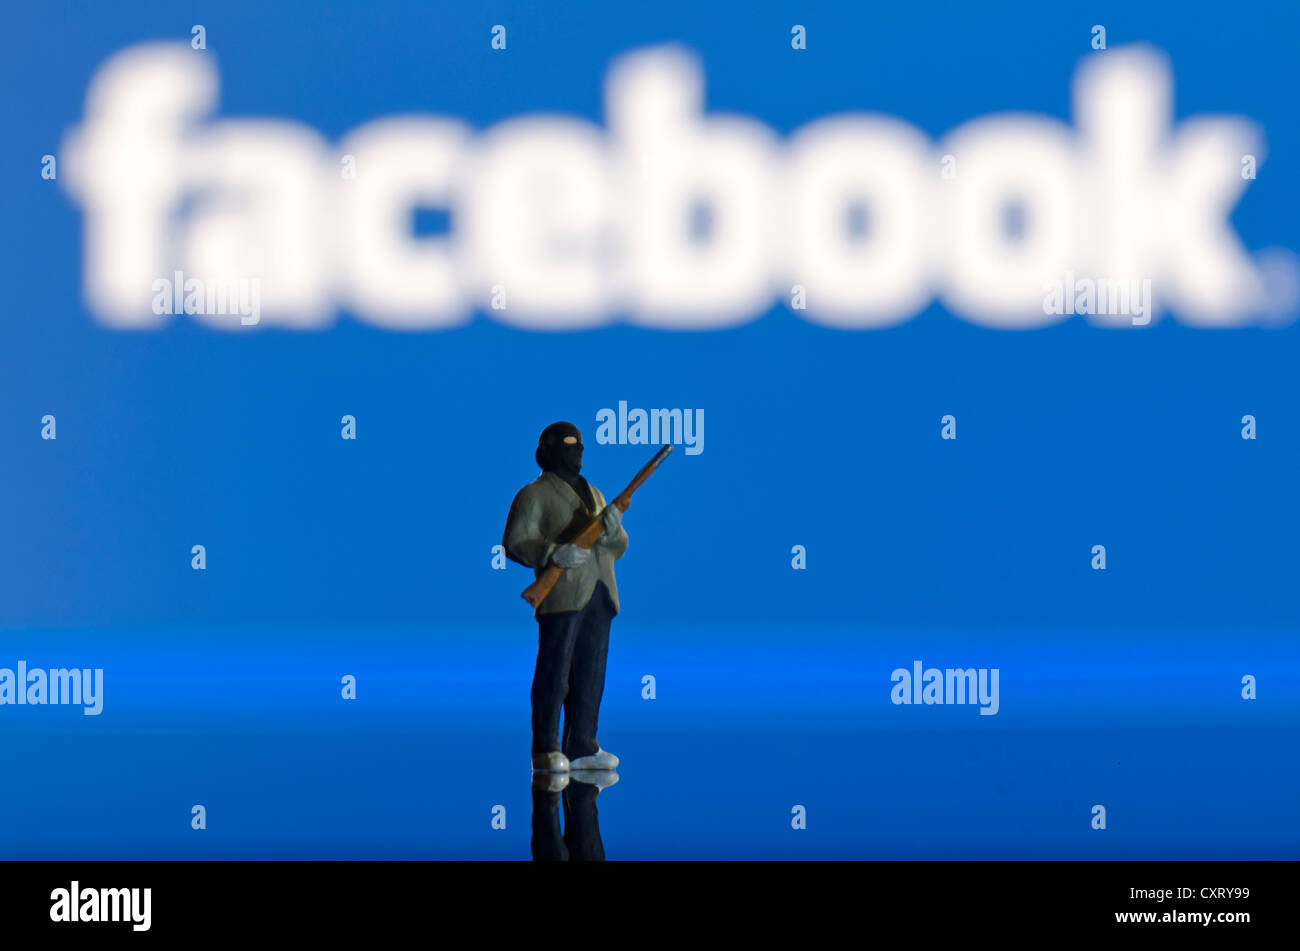 Islamistische tragen eine Waffe, die Miniatur-Abbildung steht man vor einem unscharfen Facebook-Logo, symbolisches Bild Stockfoto